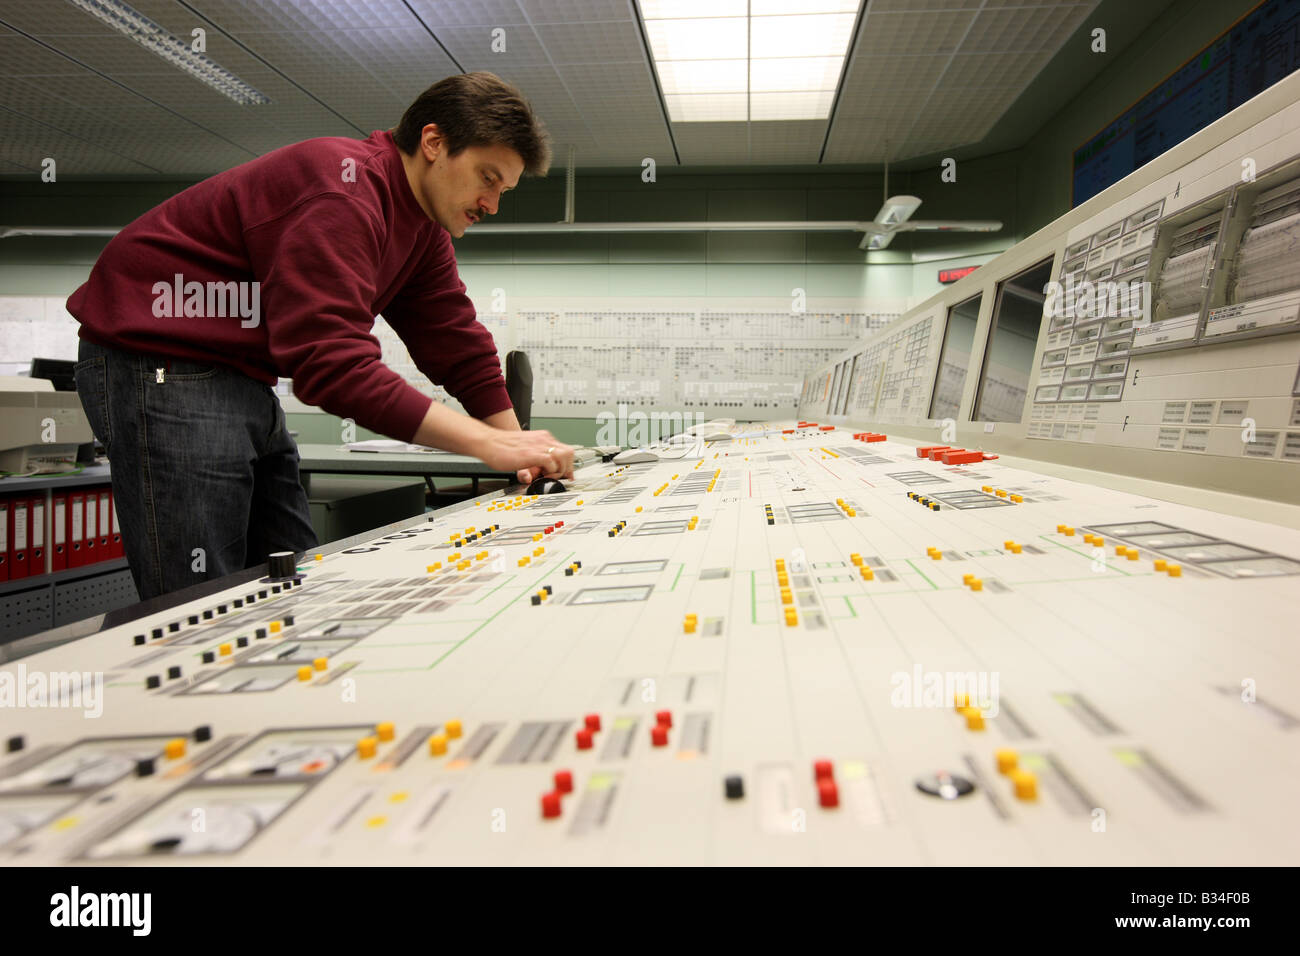 Centre de simulateur pour les centrales nucléaires, centre de formation pour le personnel de la station d'alimentation. Essen, Allemagne Banque D'Images